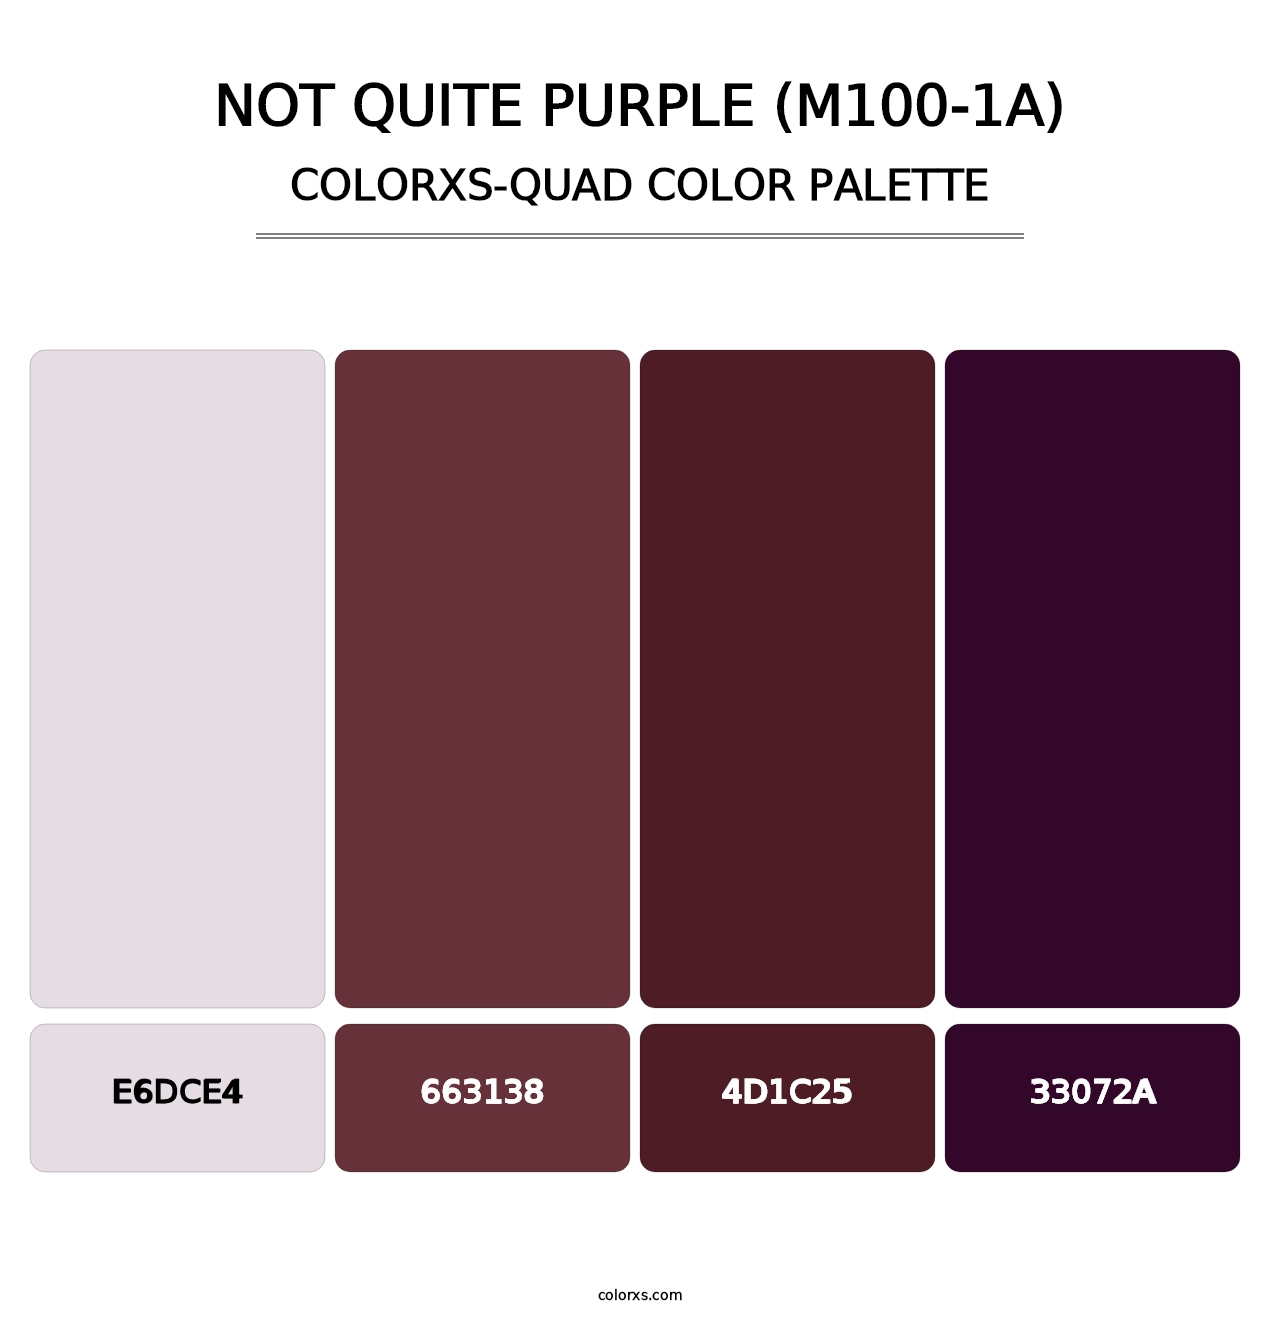 Not Quite Purple (M100-1A) - Colorxs Quad Palette